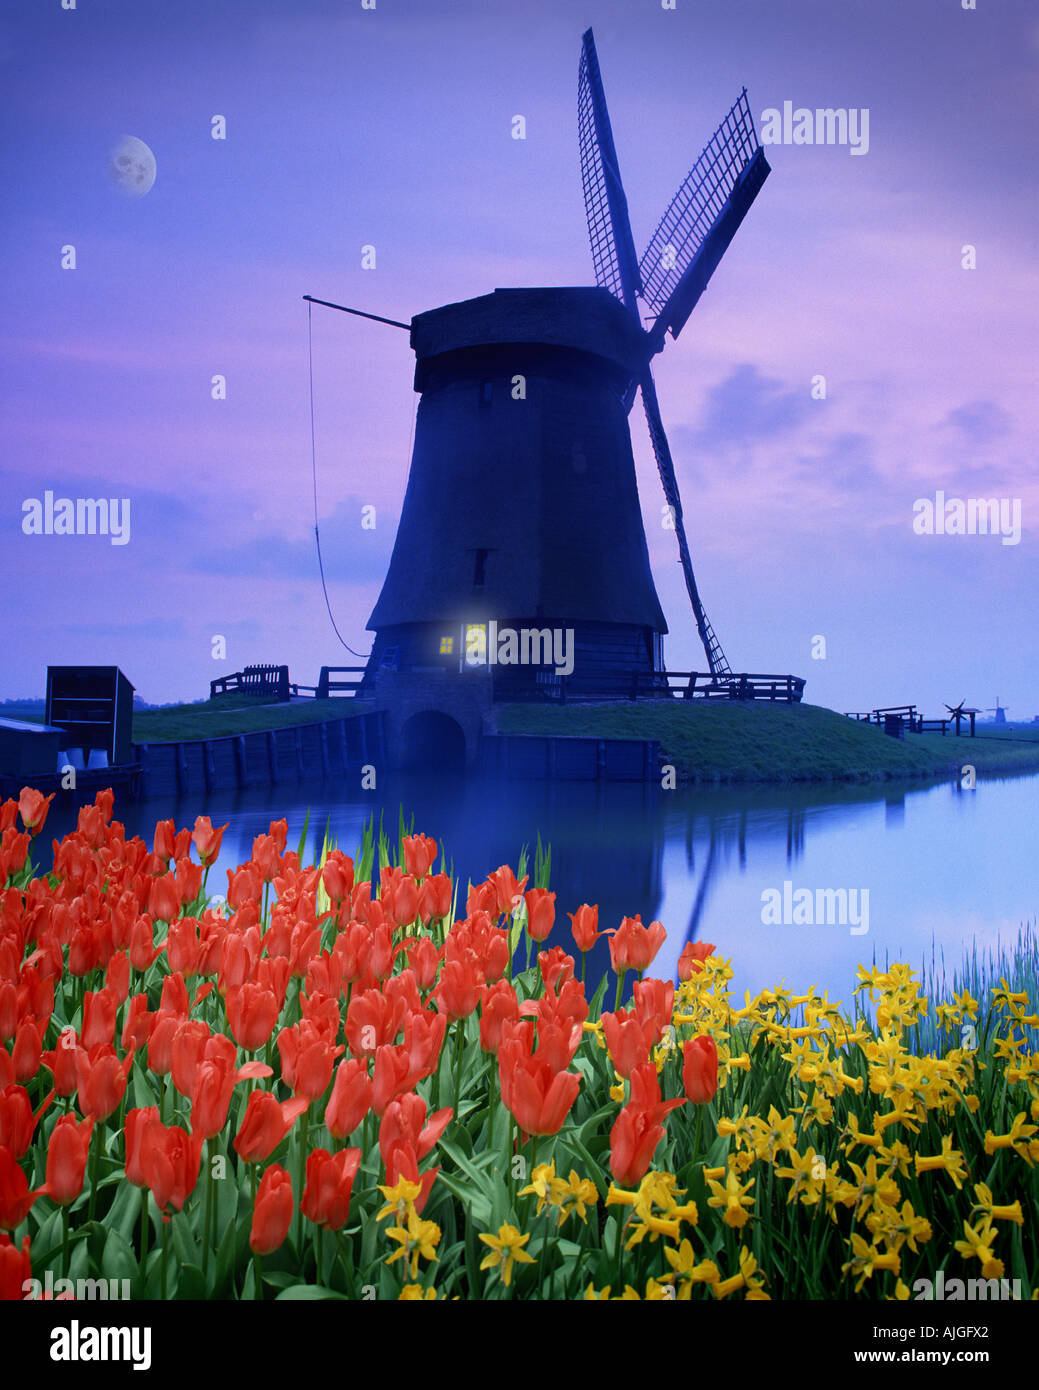 NL - NORTHERN HOLLAND:  Windmill at Schermerhorn Stock Photo